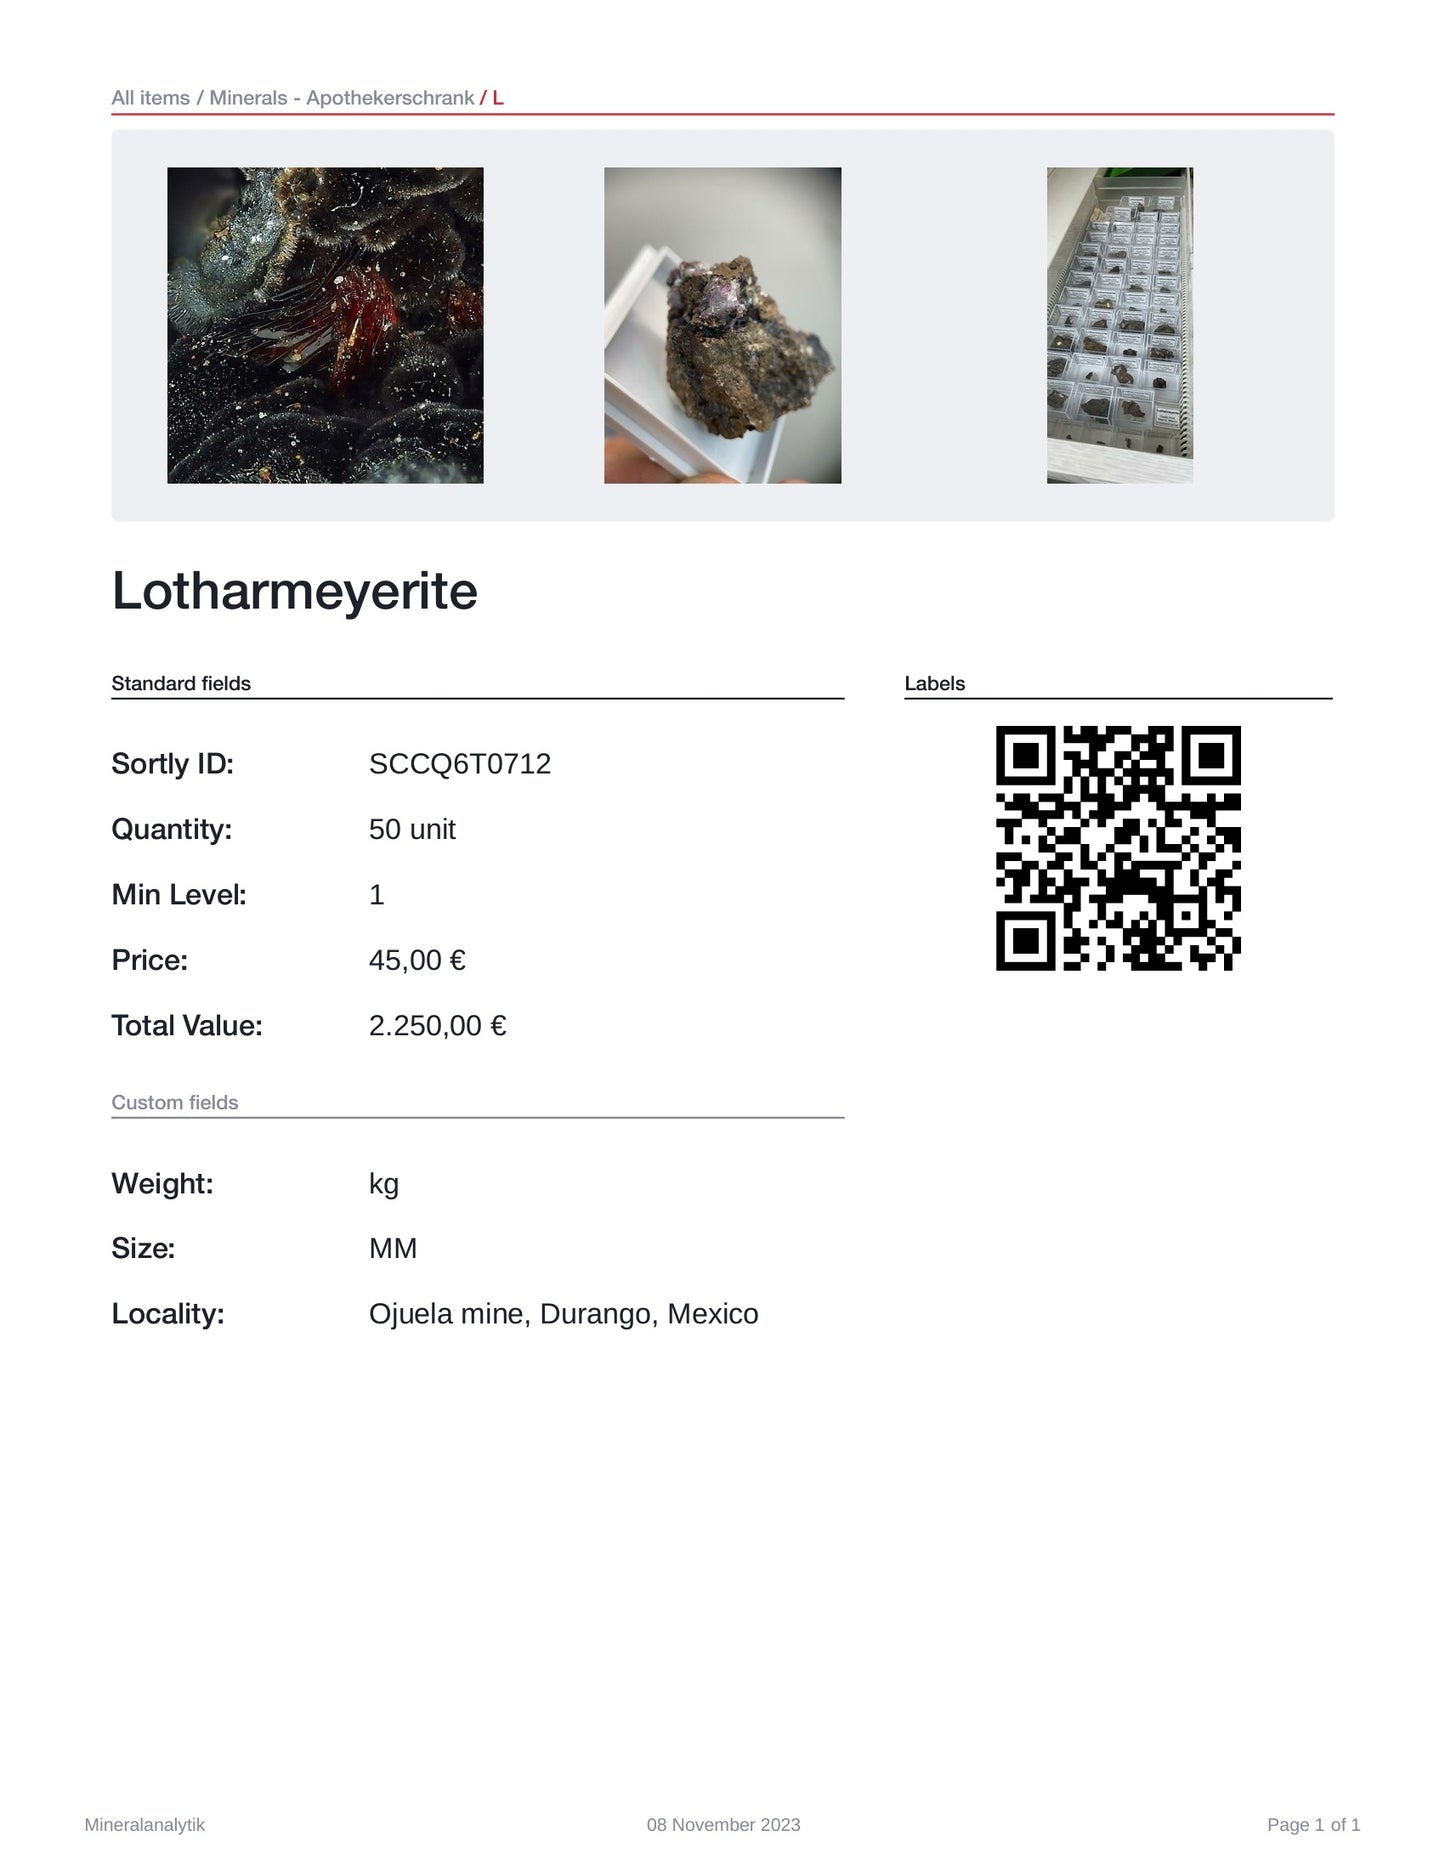 Lotharmeyerite